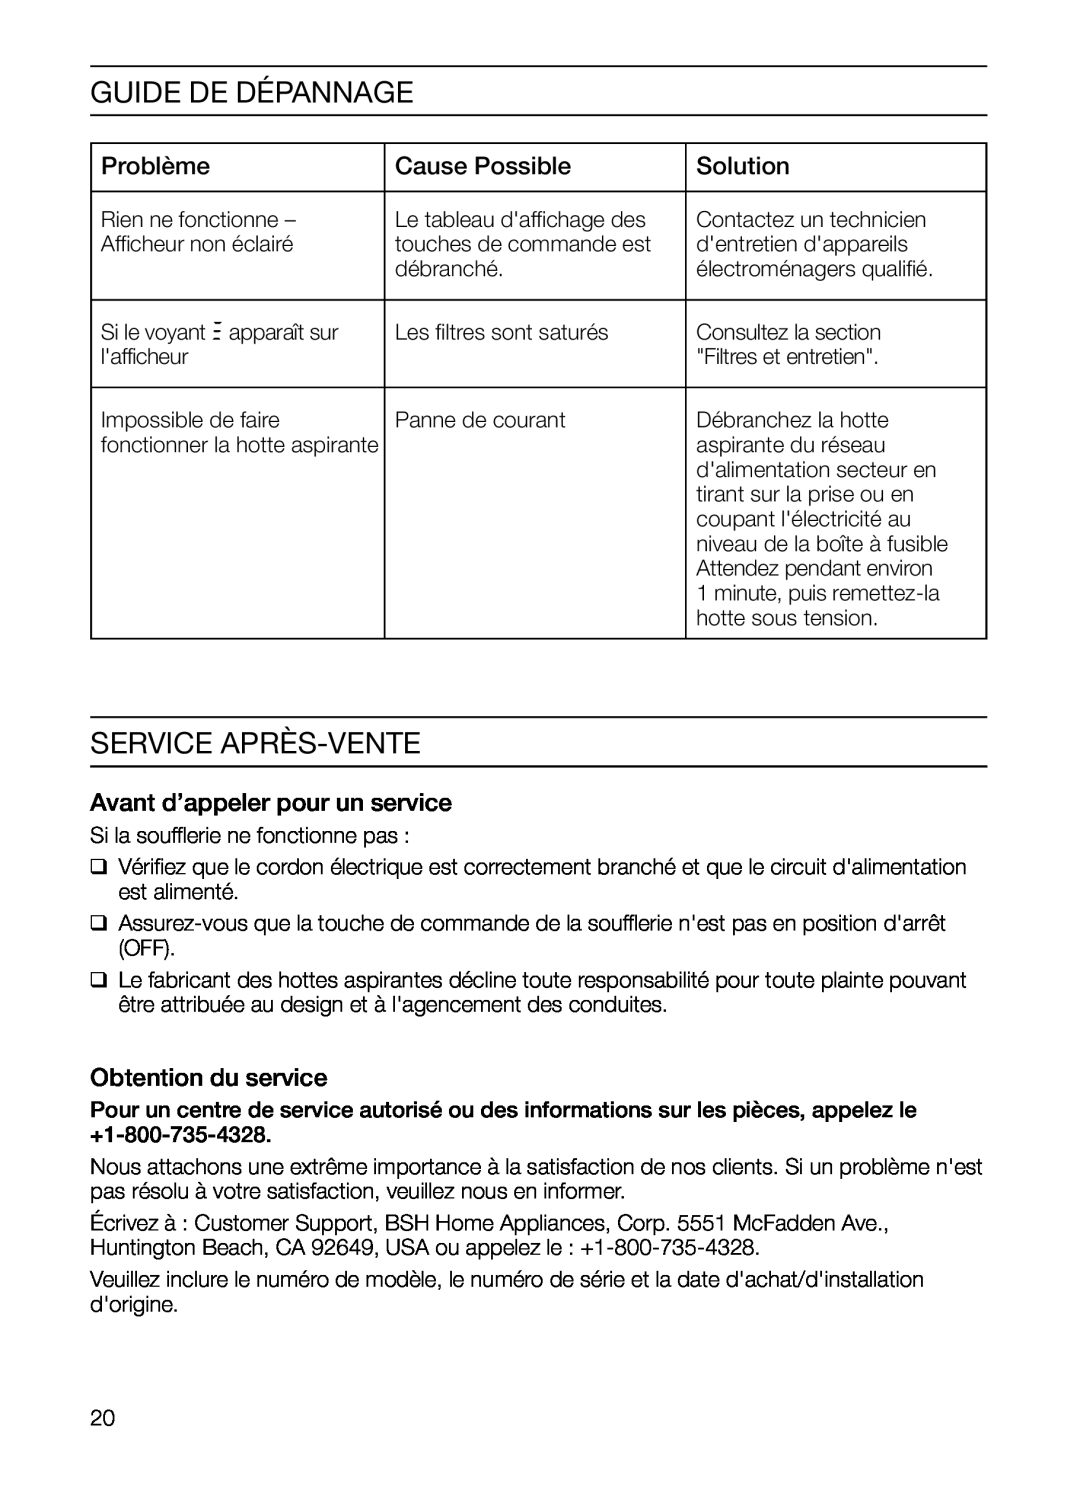 Thermador HGEW36FS manual Guide De Dépannage, Service Après-Vente, Problème, Cause Possible, Solution, Obtention du service 